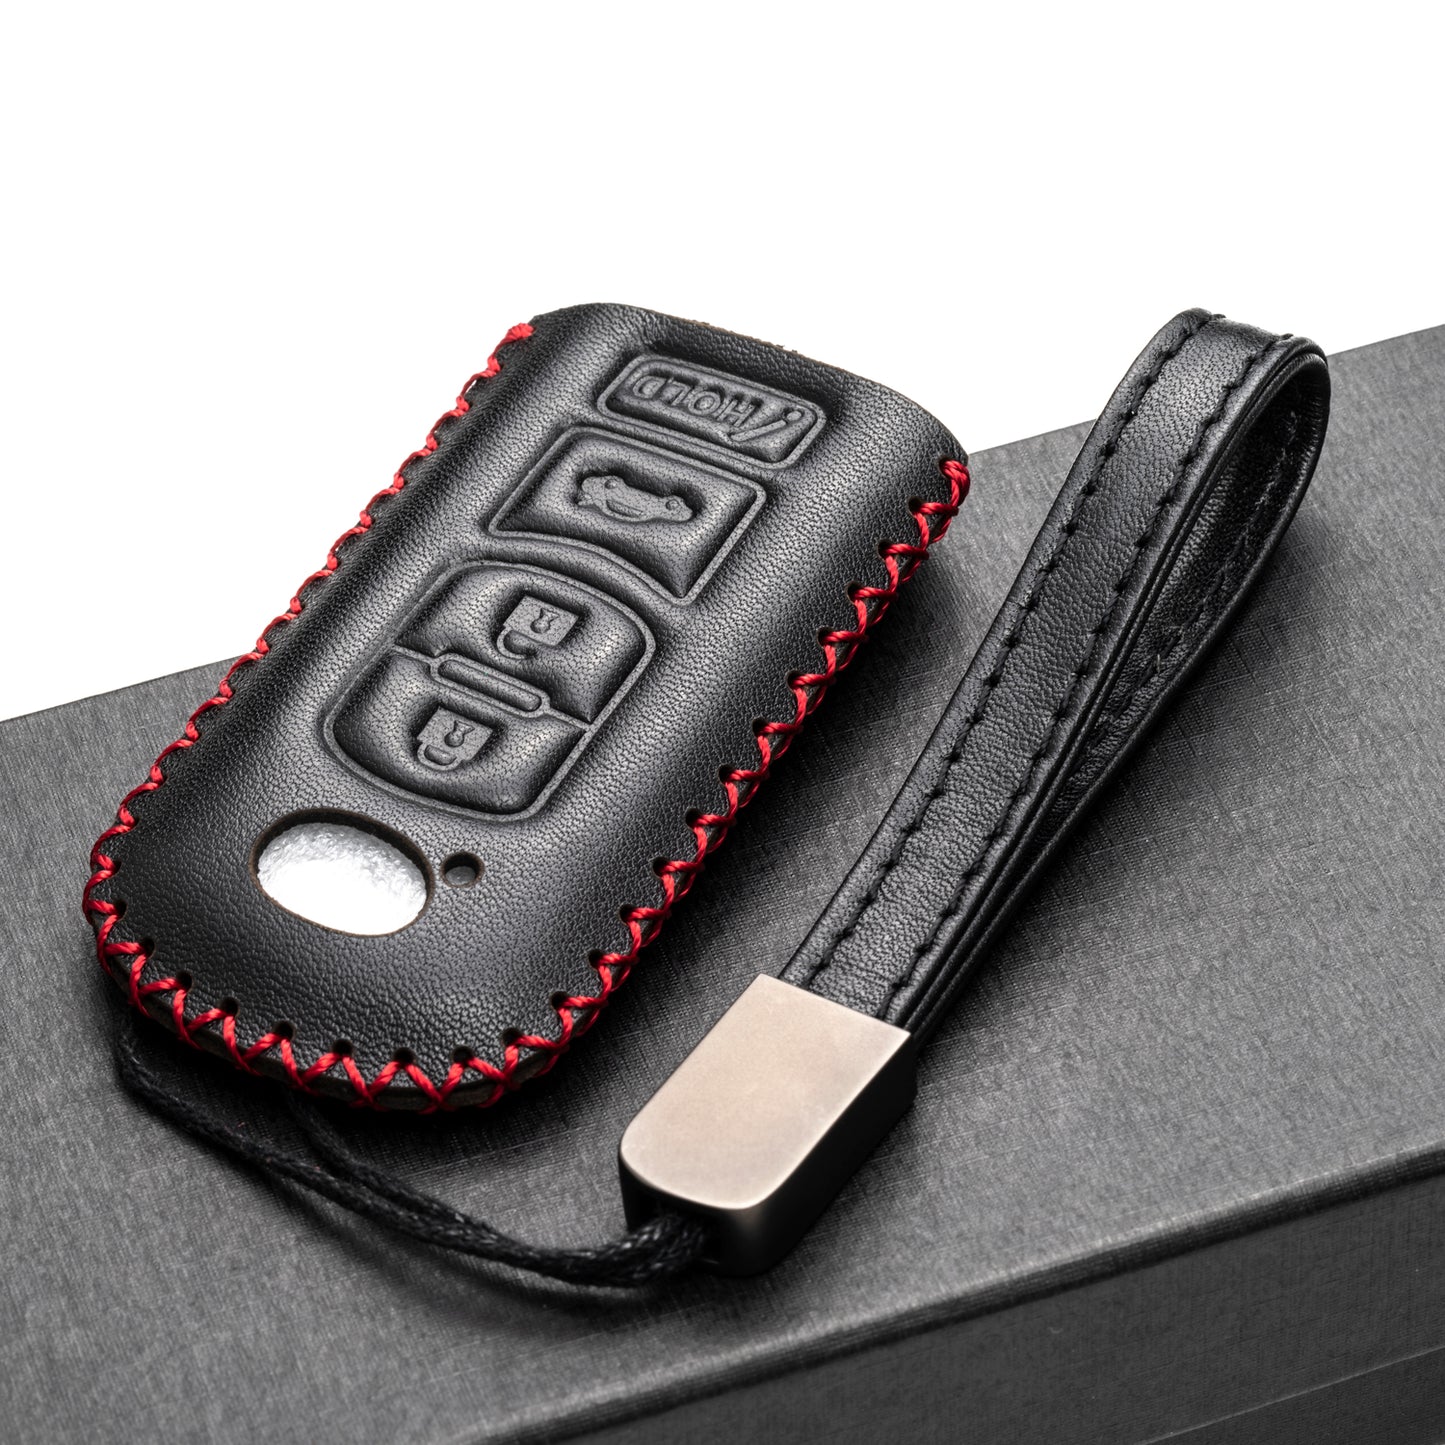 Vitodeco 4-Button Genuine Leather Smart Key Fob Case Cover Protector Compatible for Mazda 3, 6, CX-5, CX-7, CX-9, MX-5 Miata, Atenza Axela